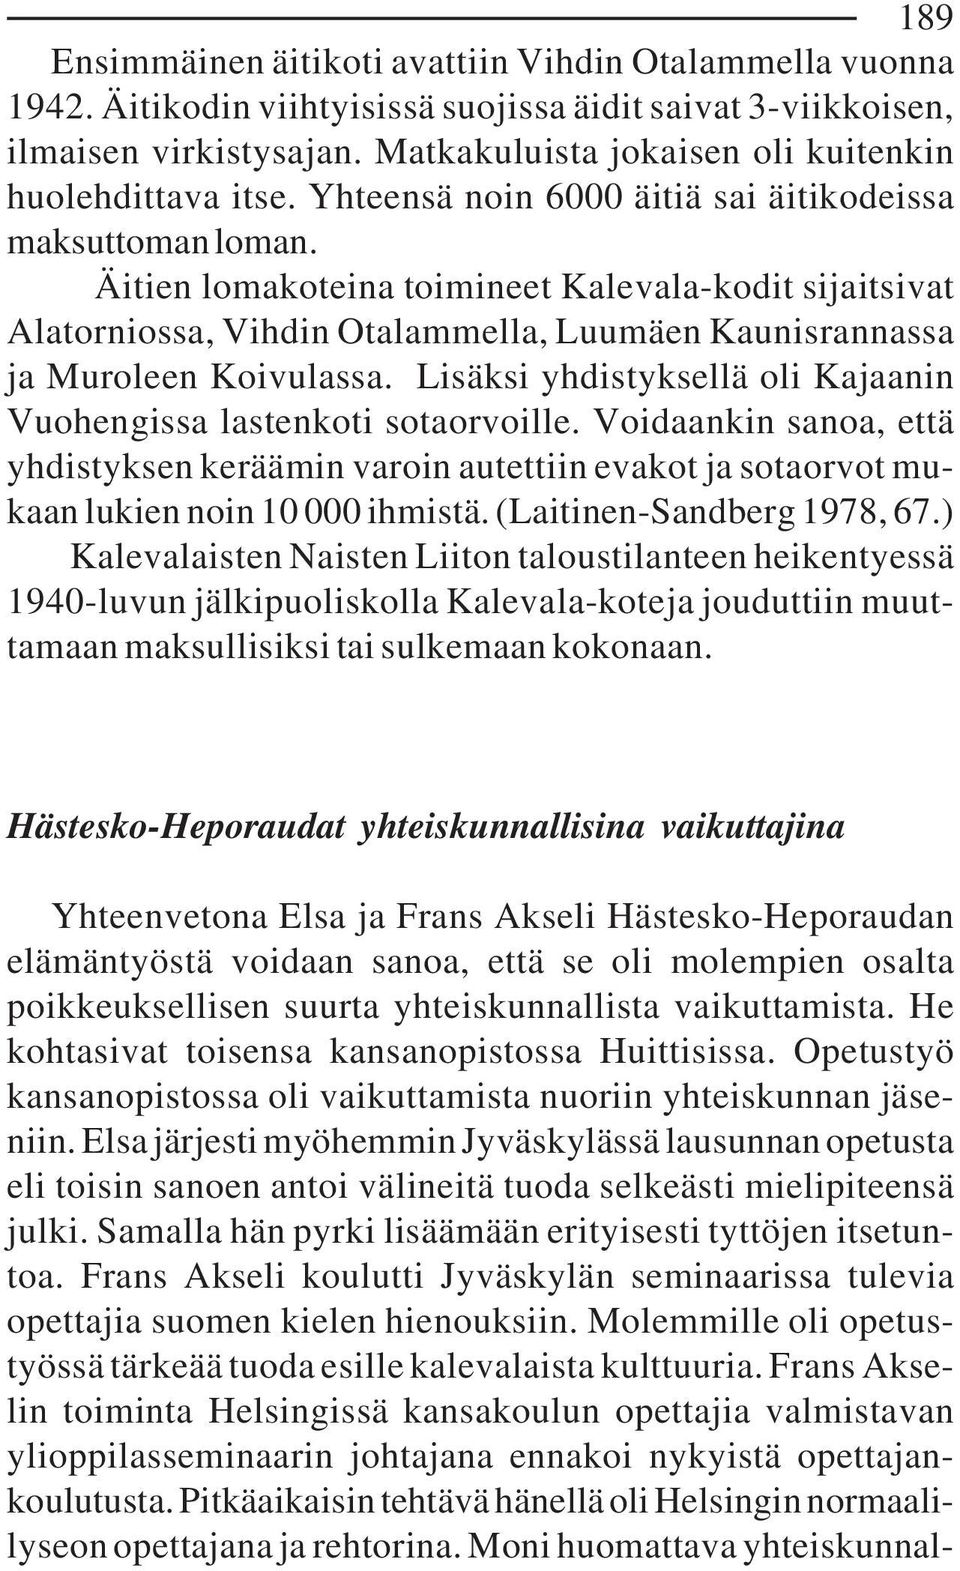 Äitien lomakoteina toimineet Kalevala-kodit sijaitsivat Alatorniossa, Vihdin Otalammella, Luumäen Kaunisrannassa ja Muroleen Koivulassa.